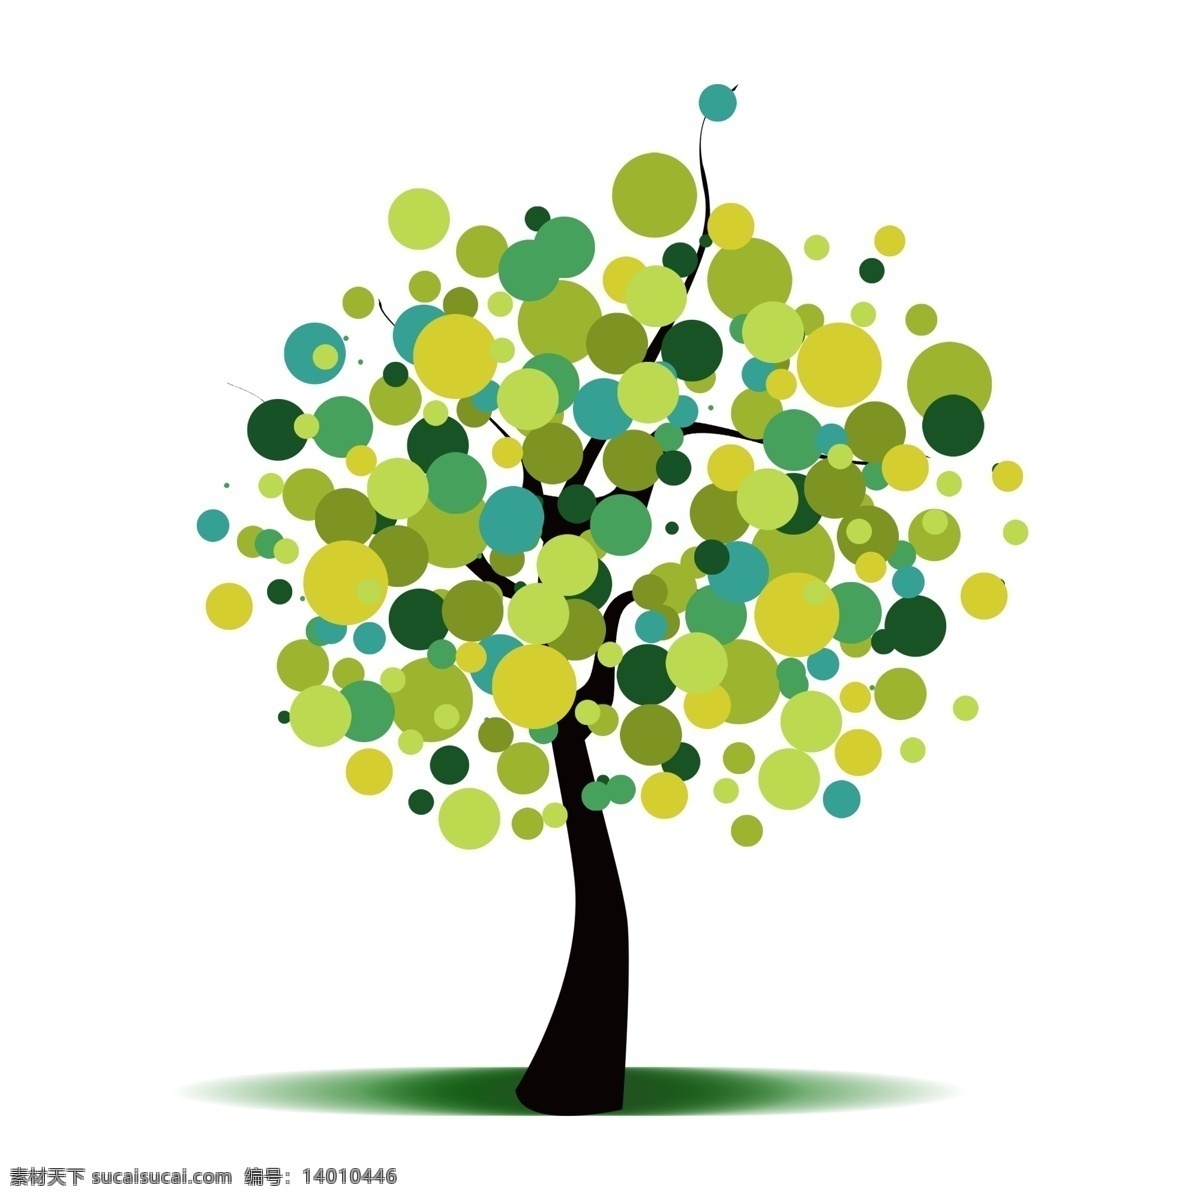 斑点 绿色 树木 免 抠 植树节元素 植物 植物元素 树木元素 卡通植物 圆点 斑点元素 斑点素材